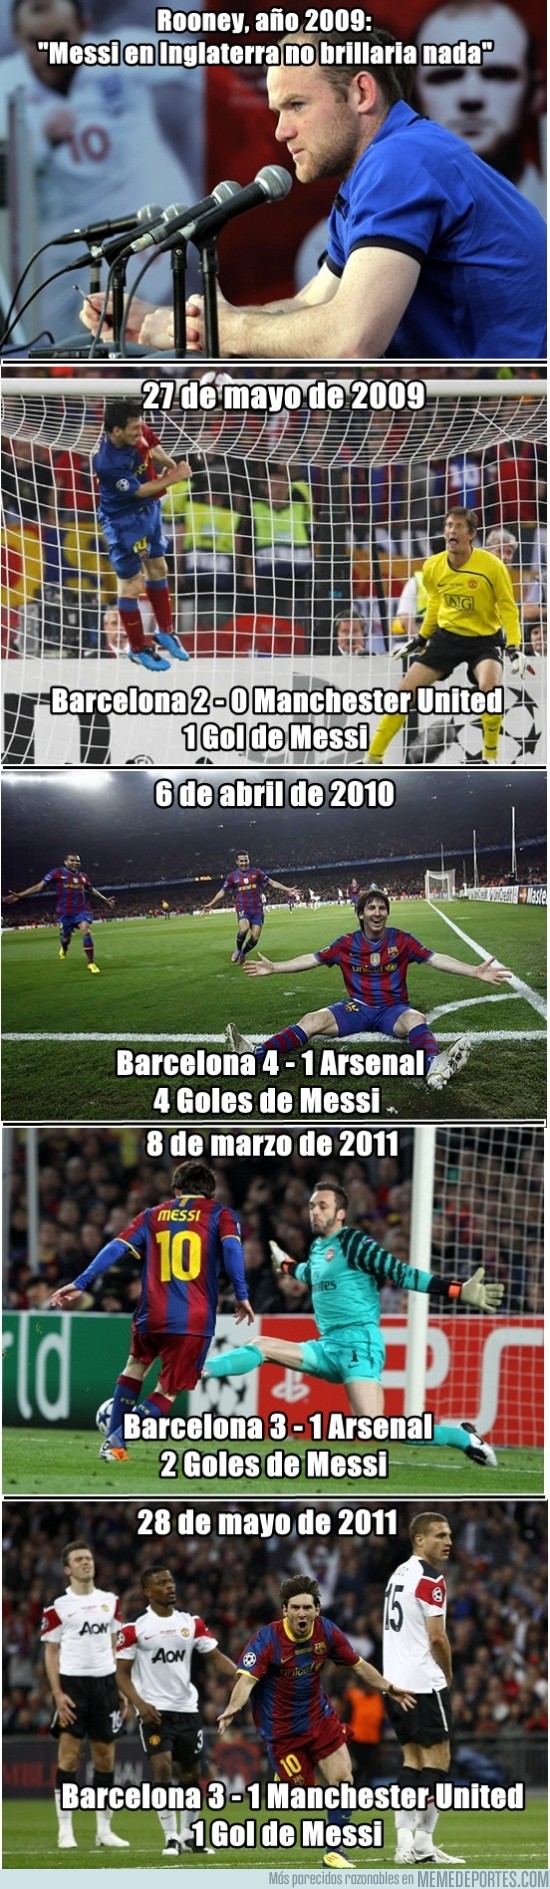 81737 - Messi, él habla jugando